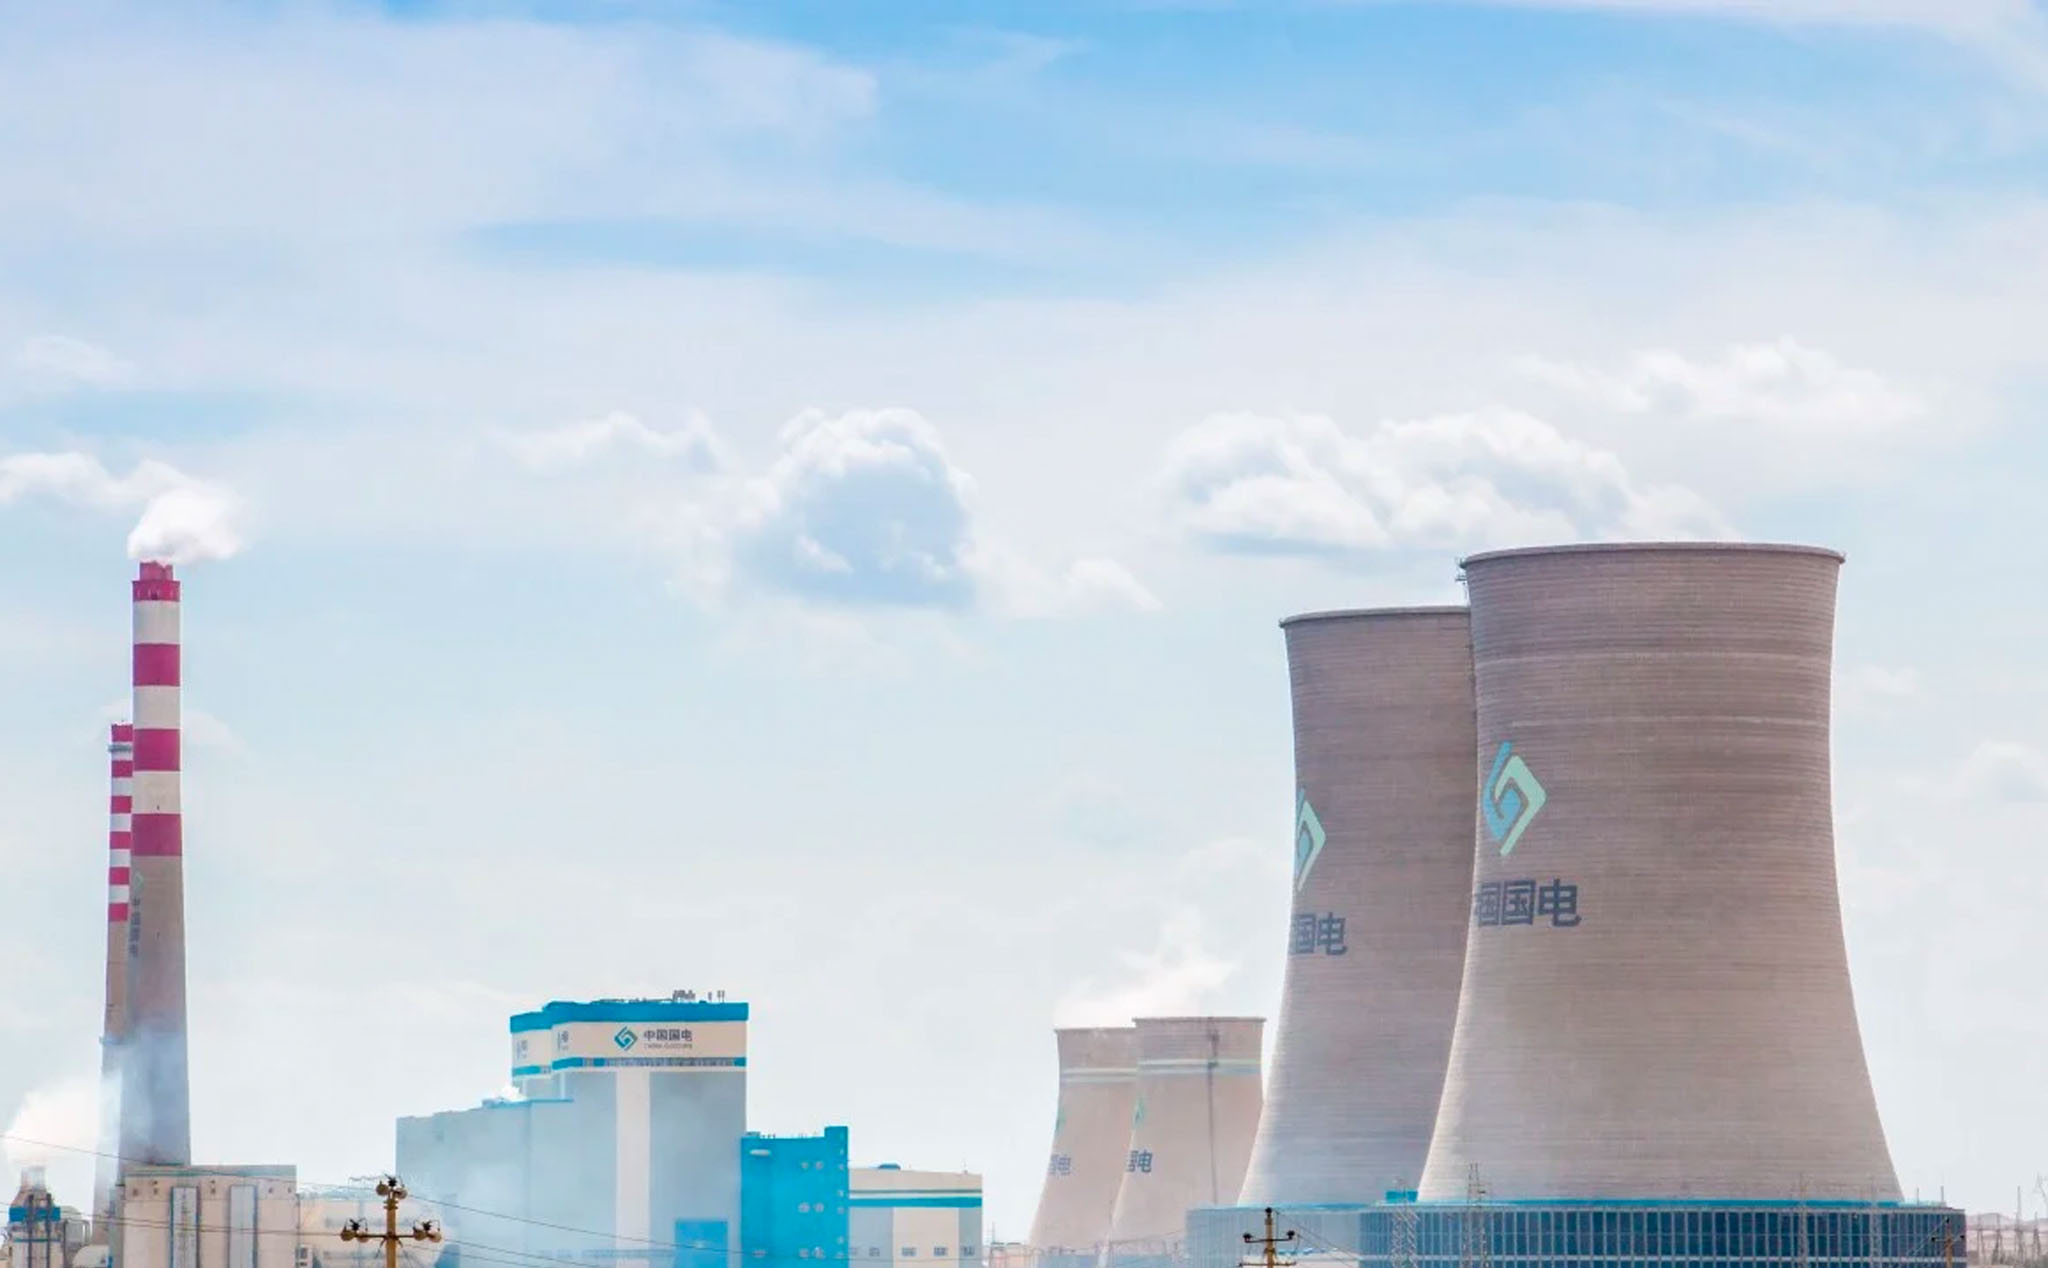 Trung Quốc dự định xây dựng lò phản ứng hạt nhân "sạch" đầu tiên, phục vụ cho mục đích thương mại